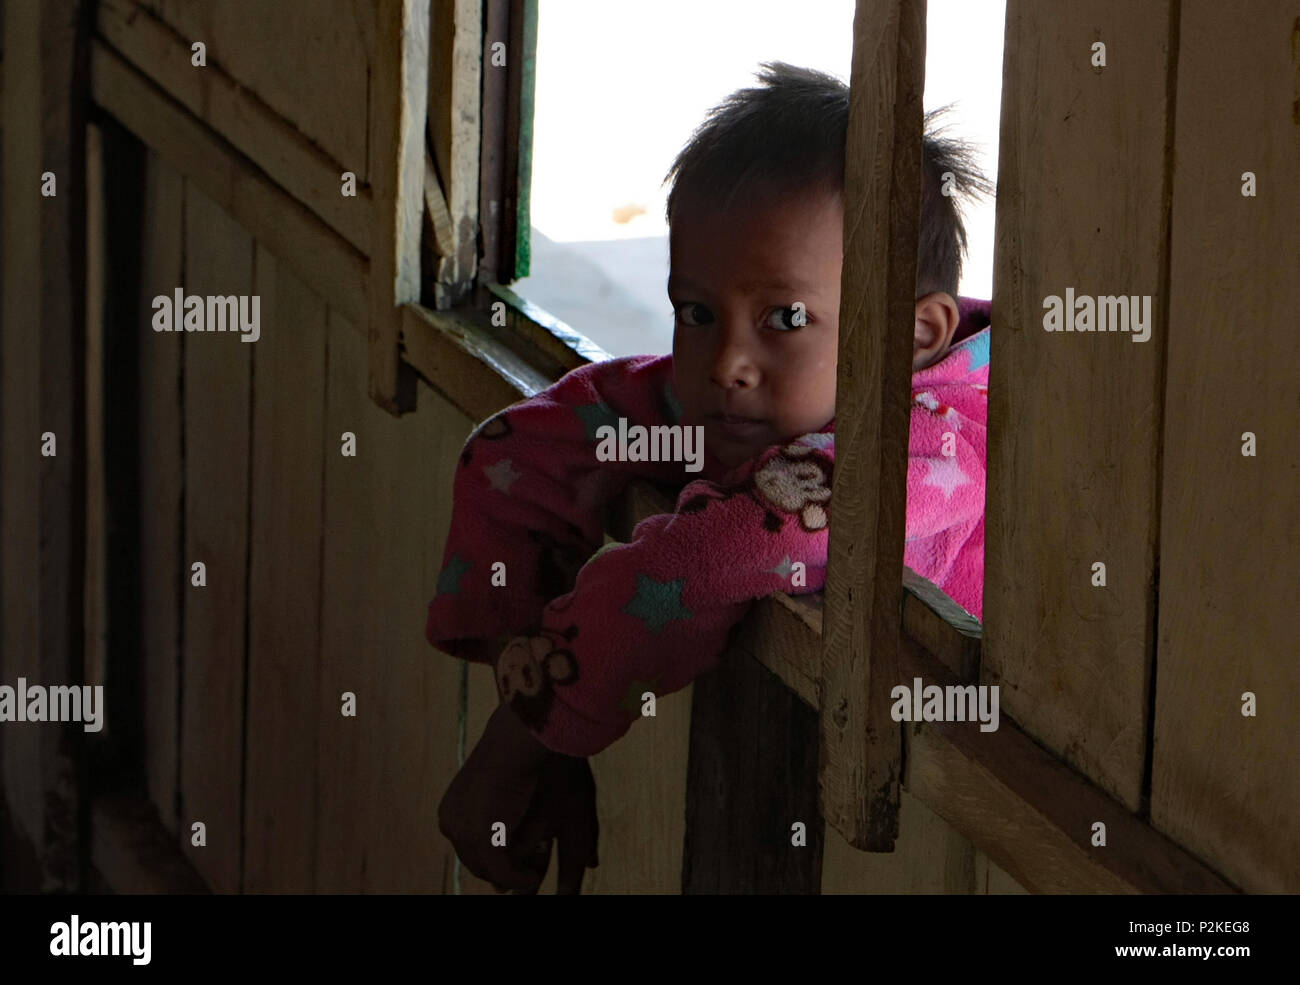 Una malinconica bambino guarda attraverso una finestra aperta in un'aula, rendendo il contatto visivo con la lente della fotocamera. Foto Stock